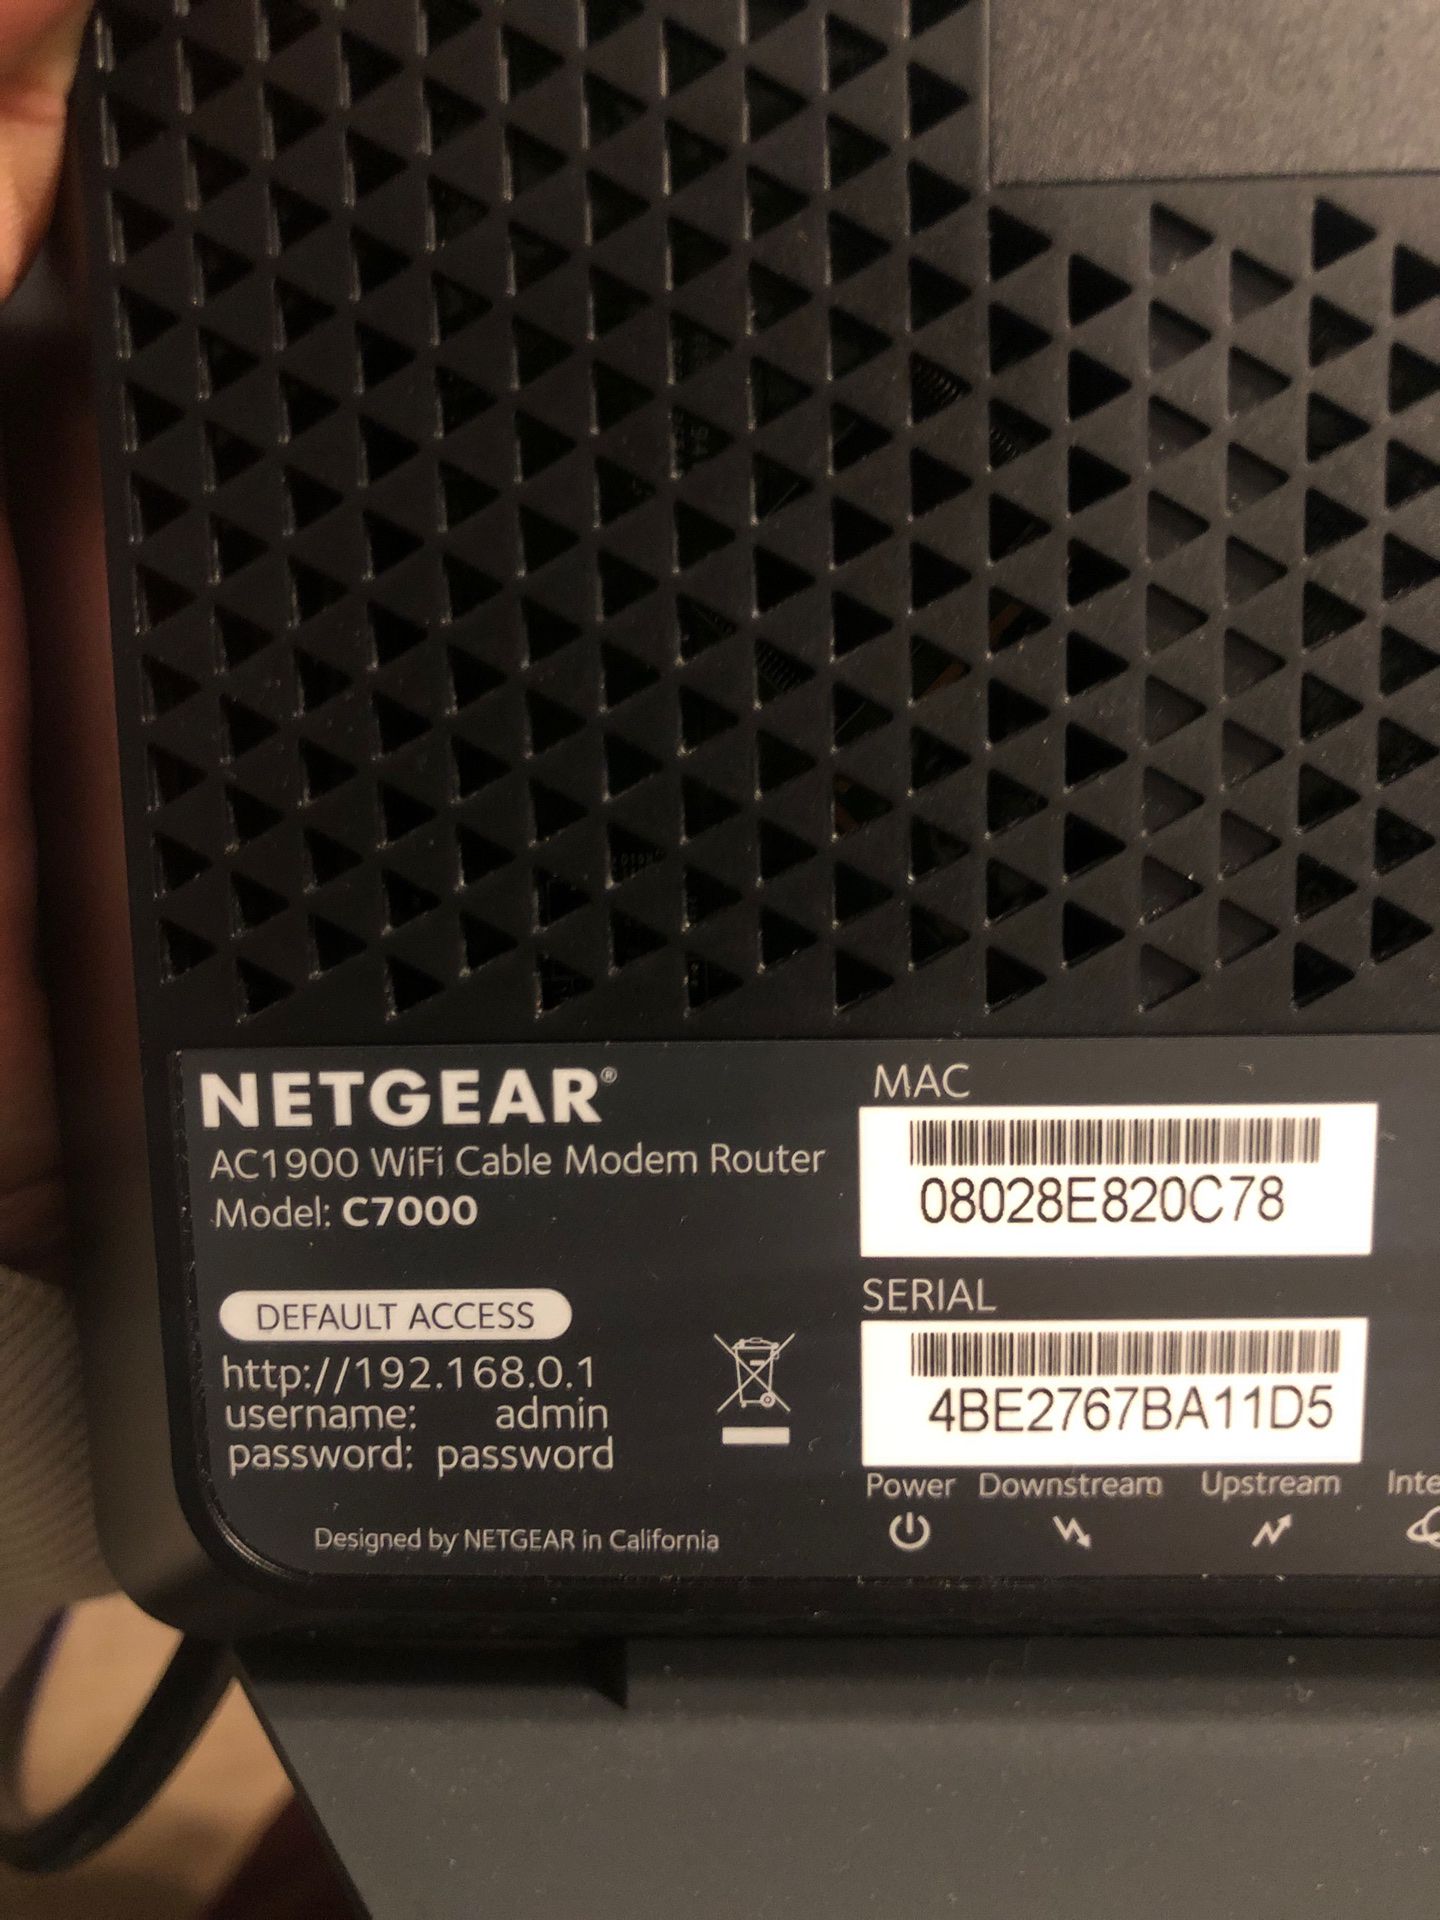 WiFi cable modem router netgear ac1900 c7000